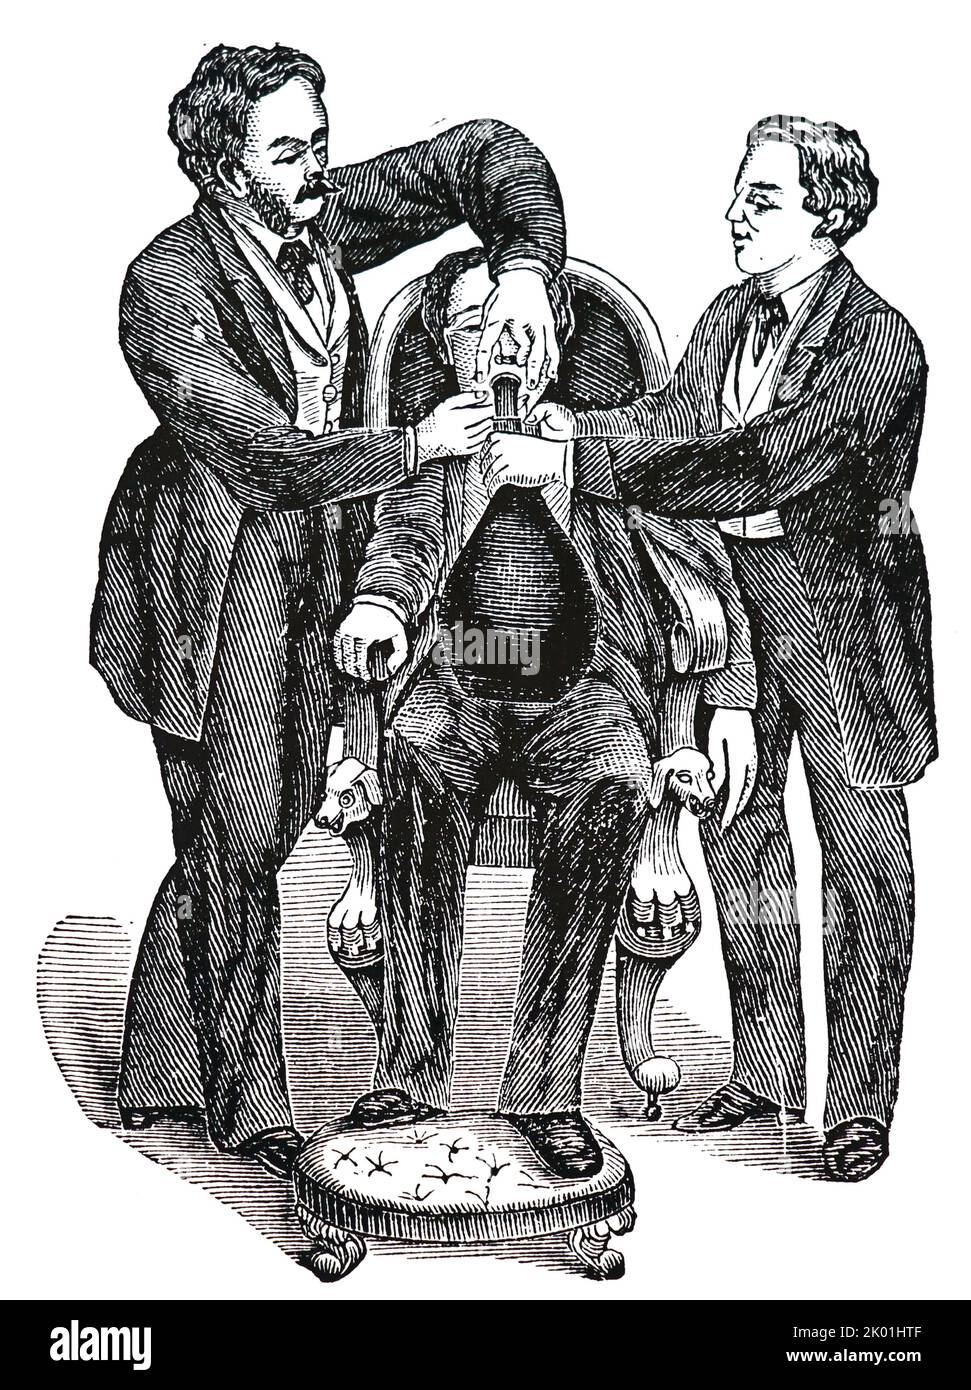 Frühe Methode zur Abgabe von Lachgas (Lachgas). Dies war nicht mehr als ein Mundstück, das durch ein Rohr mit einem Gasbeutel verbunden war. Von Henry M Lyman Artificial Anesthesia and Anaesthestics, London, 1883. Stockfoto